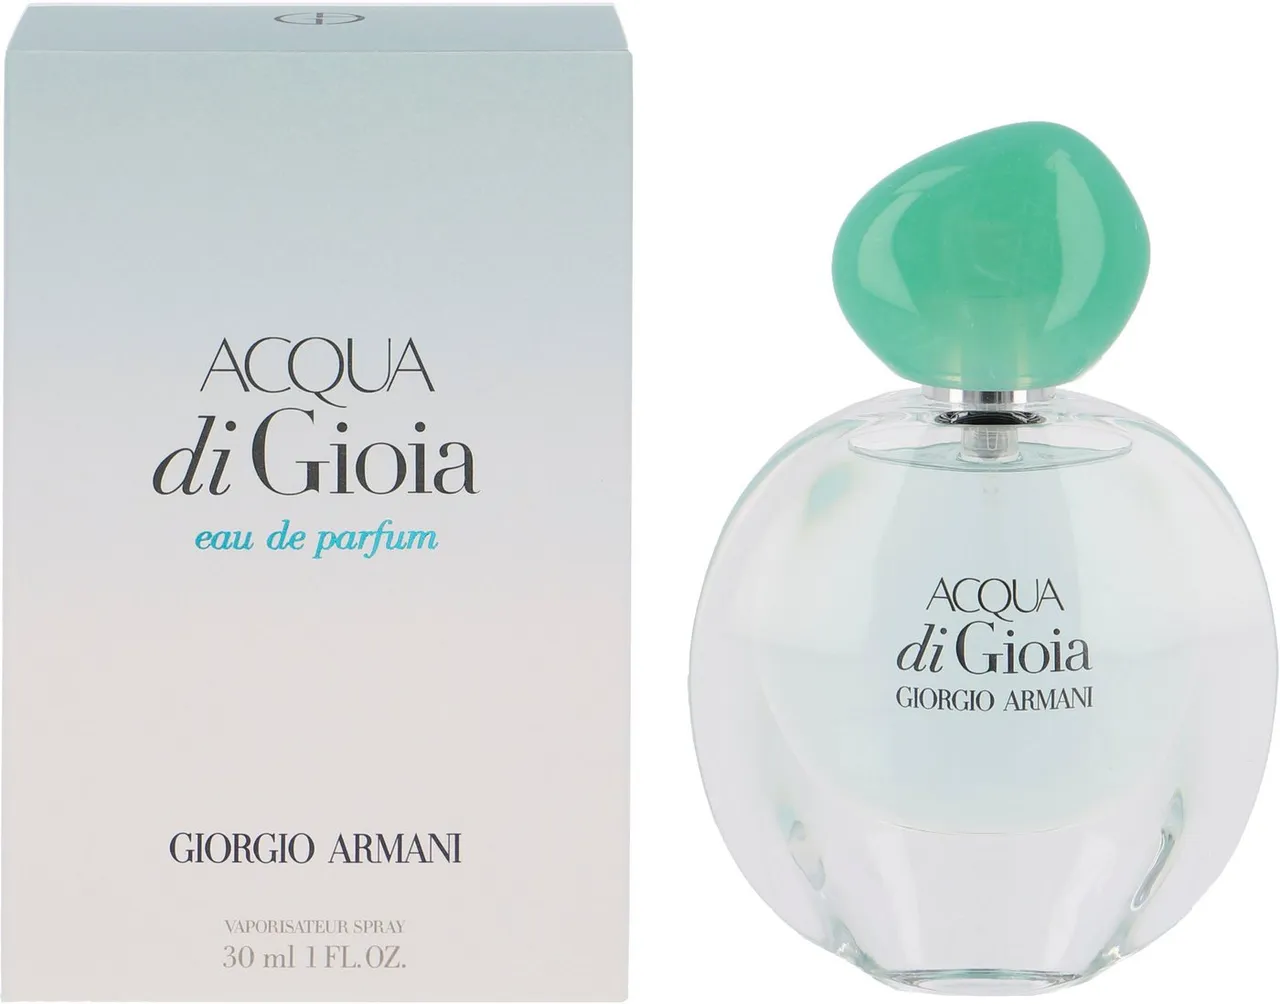 Giorgio Armani Eau de Parfum Acqua di Gioia, Parfum, EdP, Für die sinnliche Frau